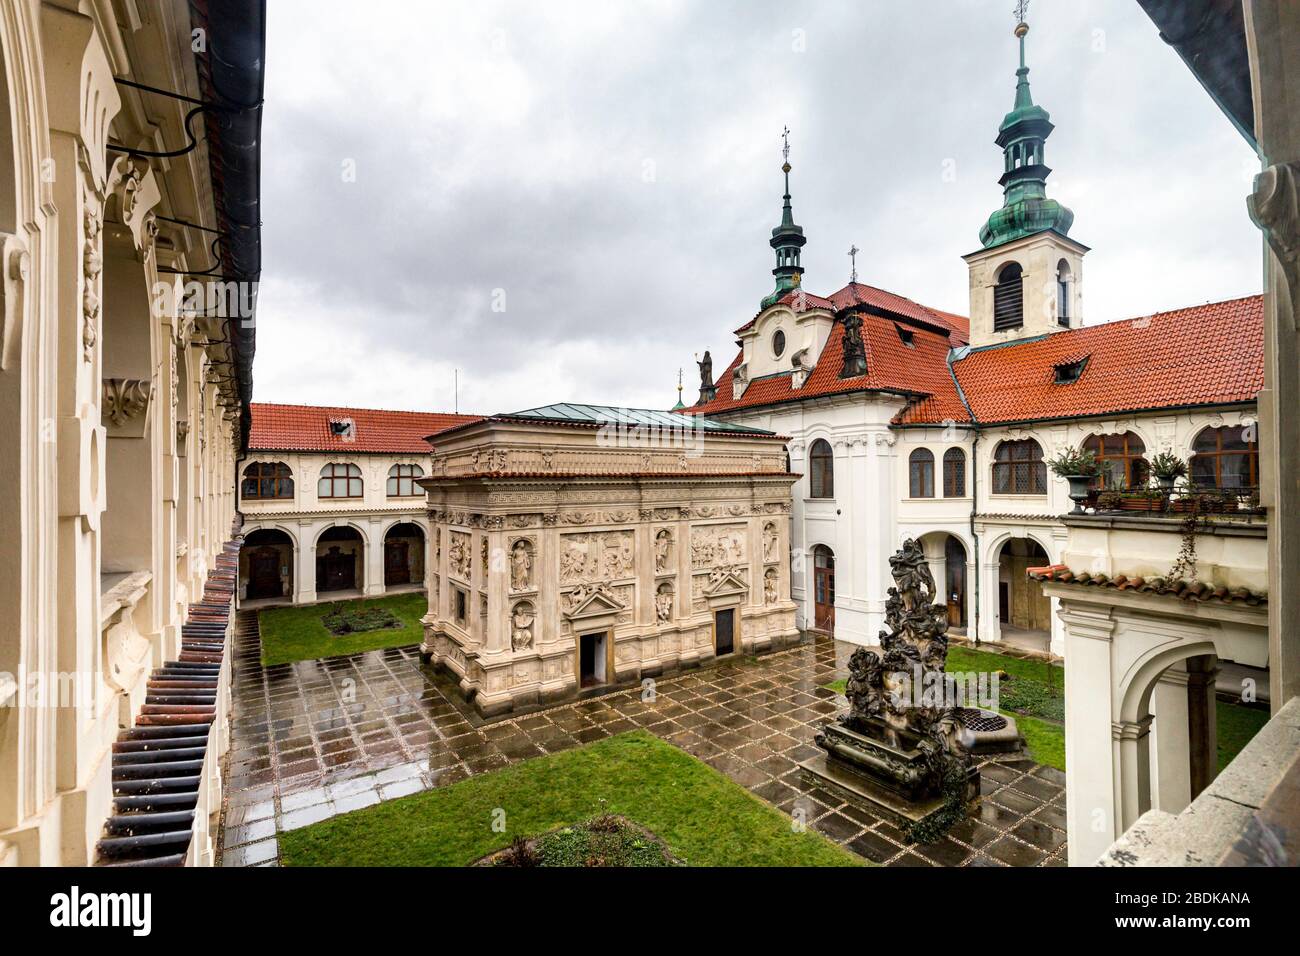 Le sanctuaire Loreto (Loreta), Prague. Église notre-Dame de Loreto, cour intérieure avec la Santa Casa (Maison Sainte) et tour de l'horloge derrière. Banque D'Images